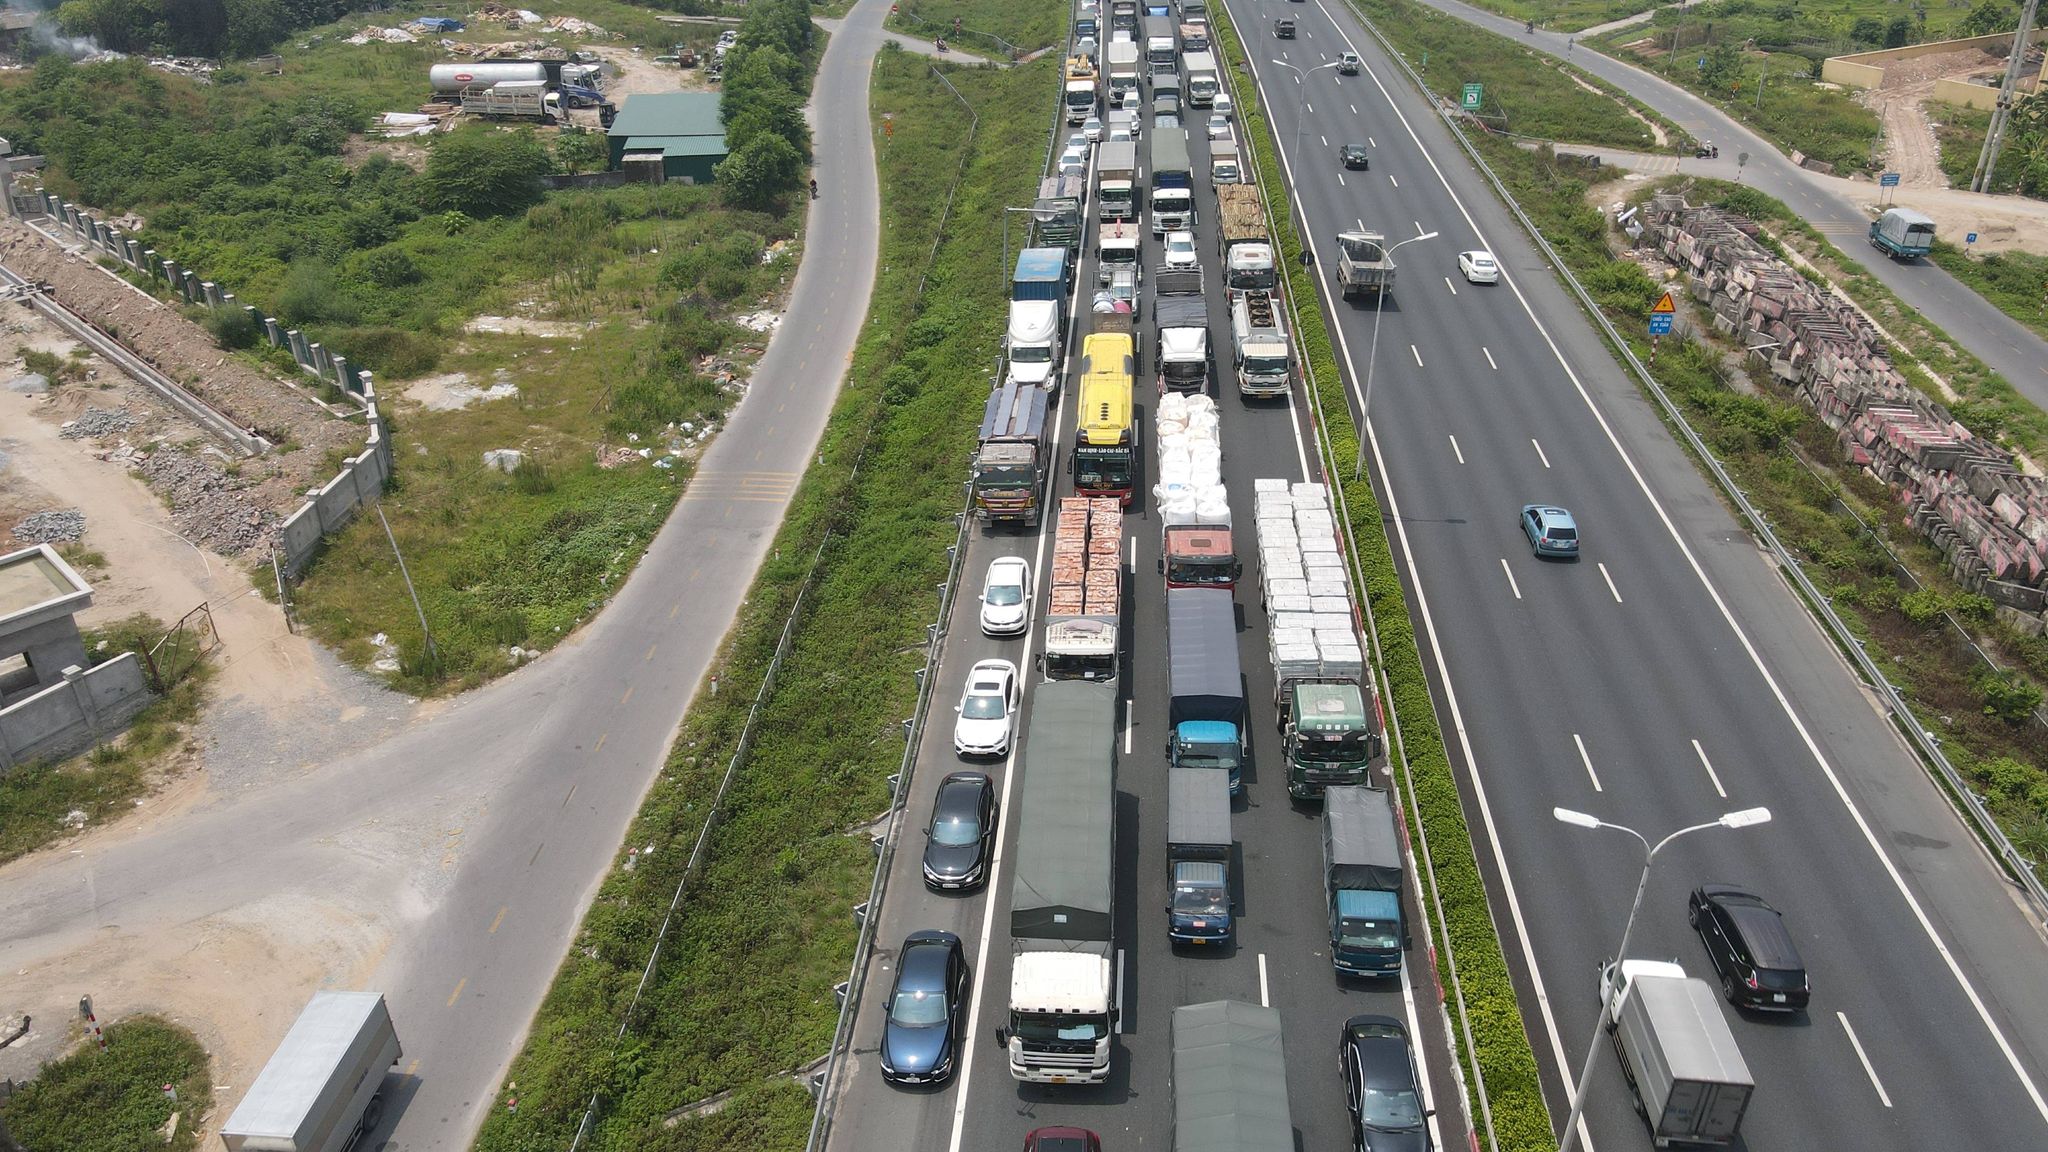 Sáng 20/7, tại chốt trạm thu phí cao tốc Pháp Vân - Cầu Giẽ xảy ra tình trạng ùn tắc kéo dài do lưu lượng các phương tiện vào thành phố quá lớn và chốt kiểm tra liên ngành kiểm tra 100% đối với các xe vào thành phố.